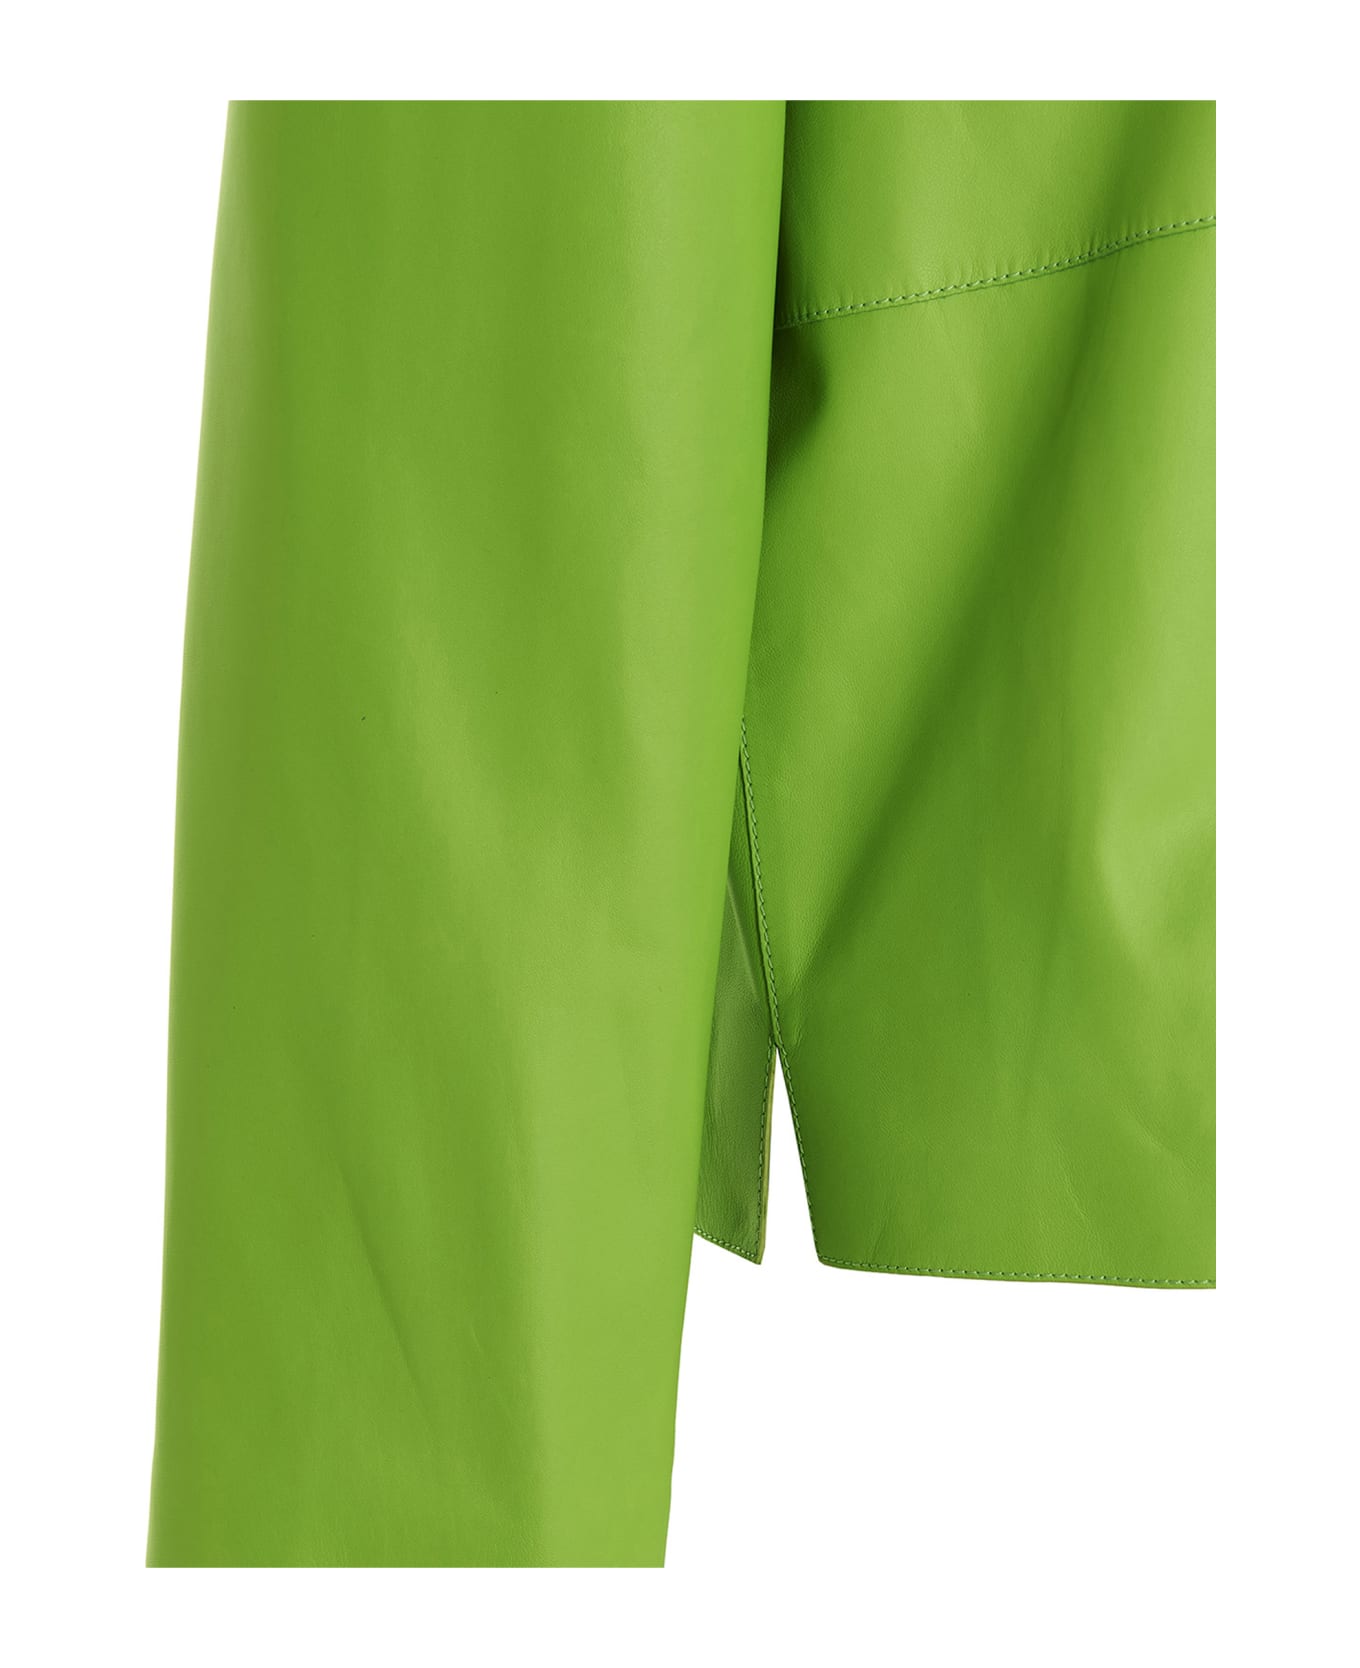 Loewe 'anagram' Jacket - Green シャツ